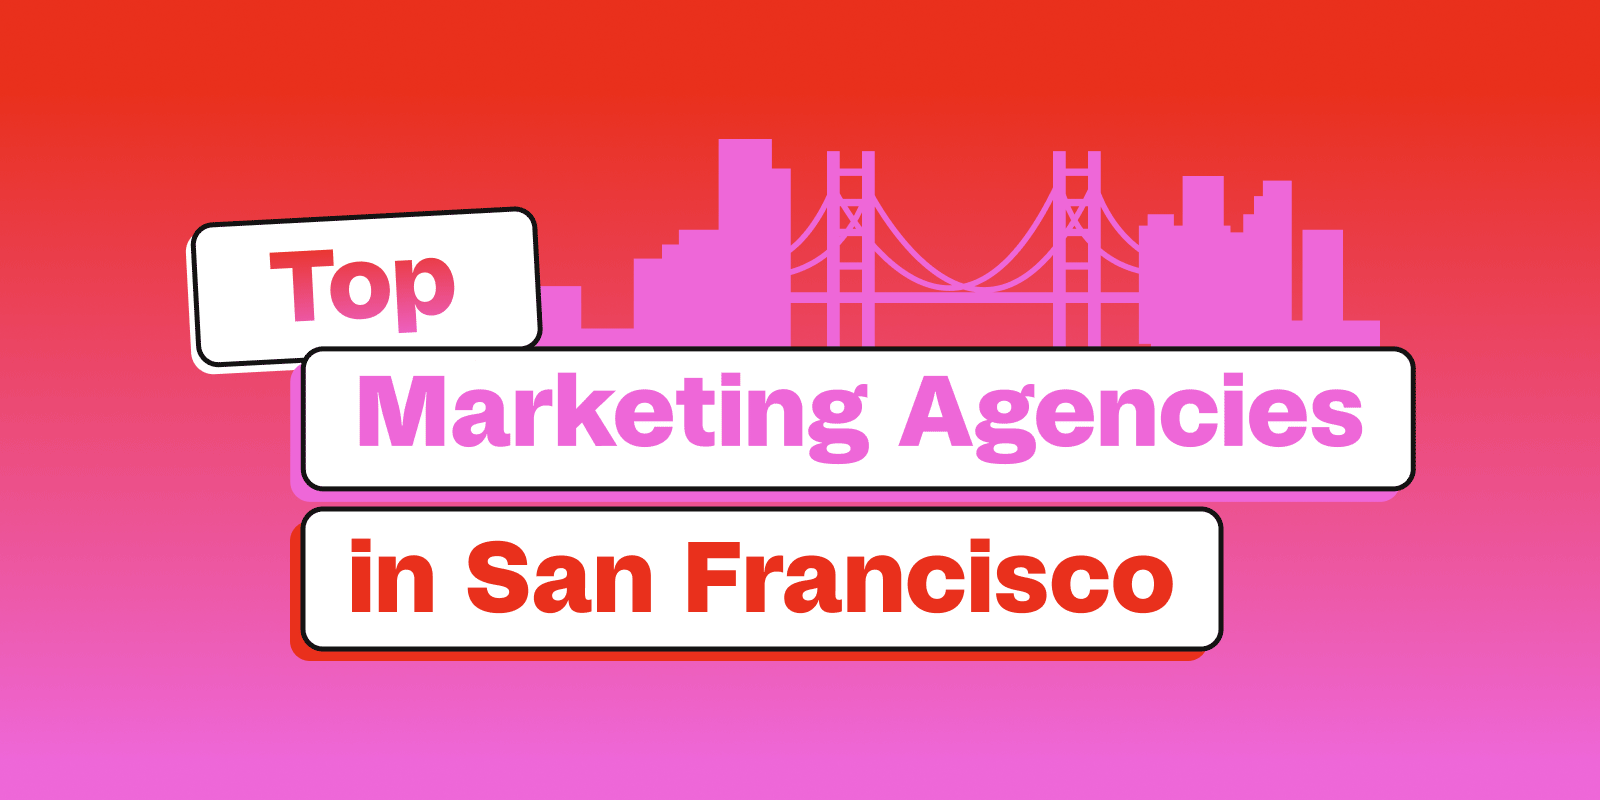 Top Marketing Agencies in San Francisco